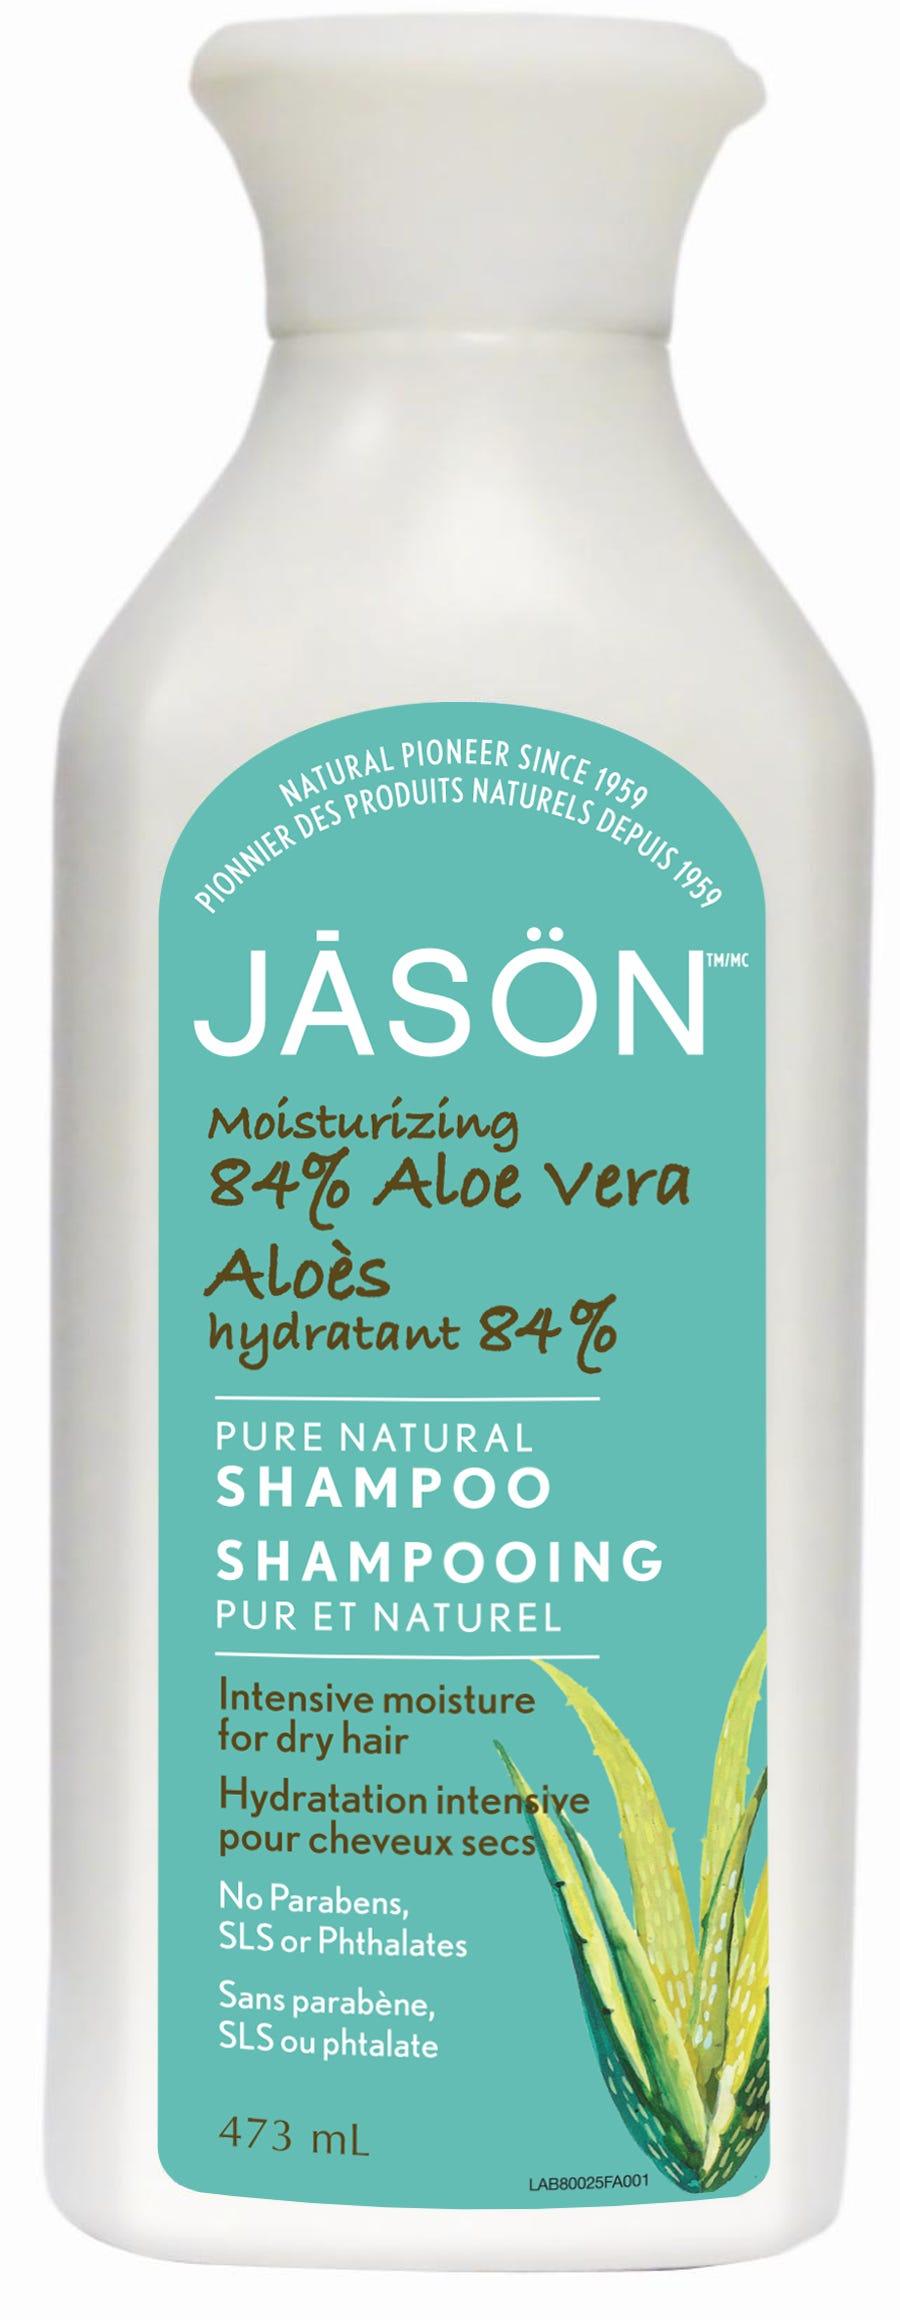 Jason Shampoo 84% Aloe Vera 473ml